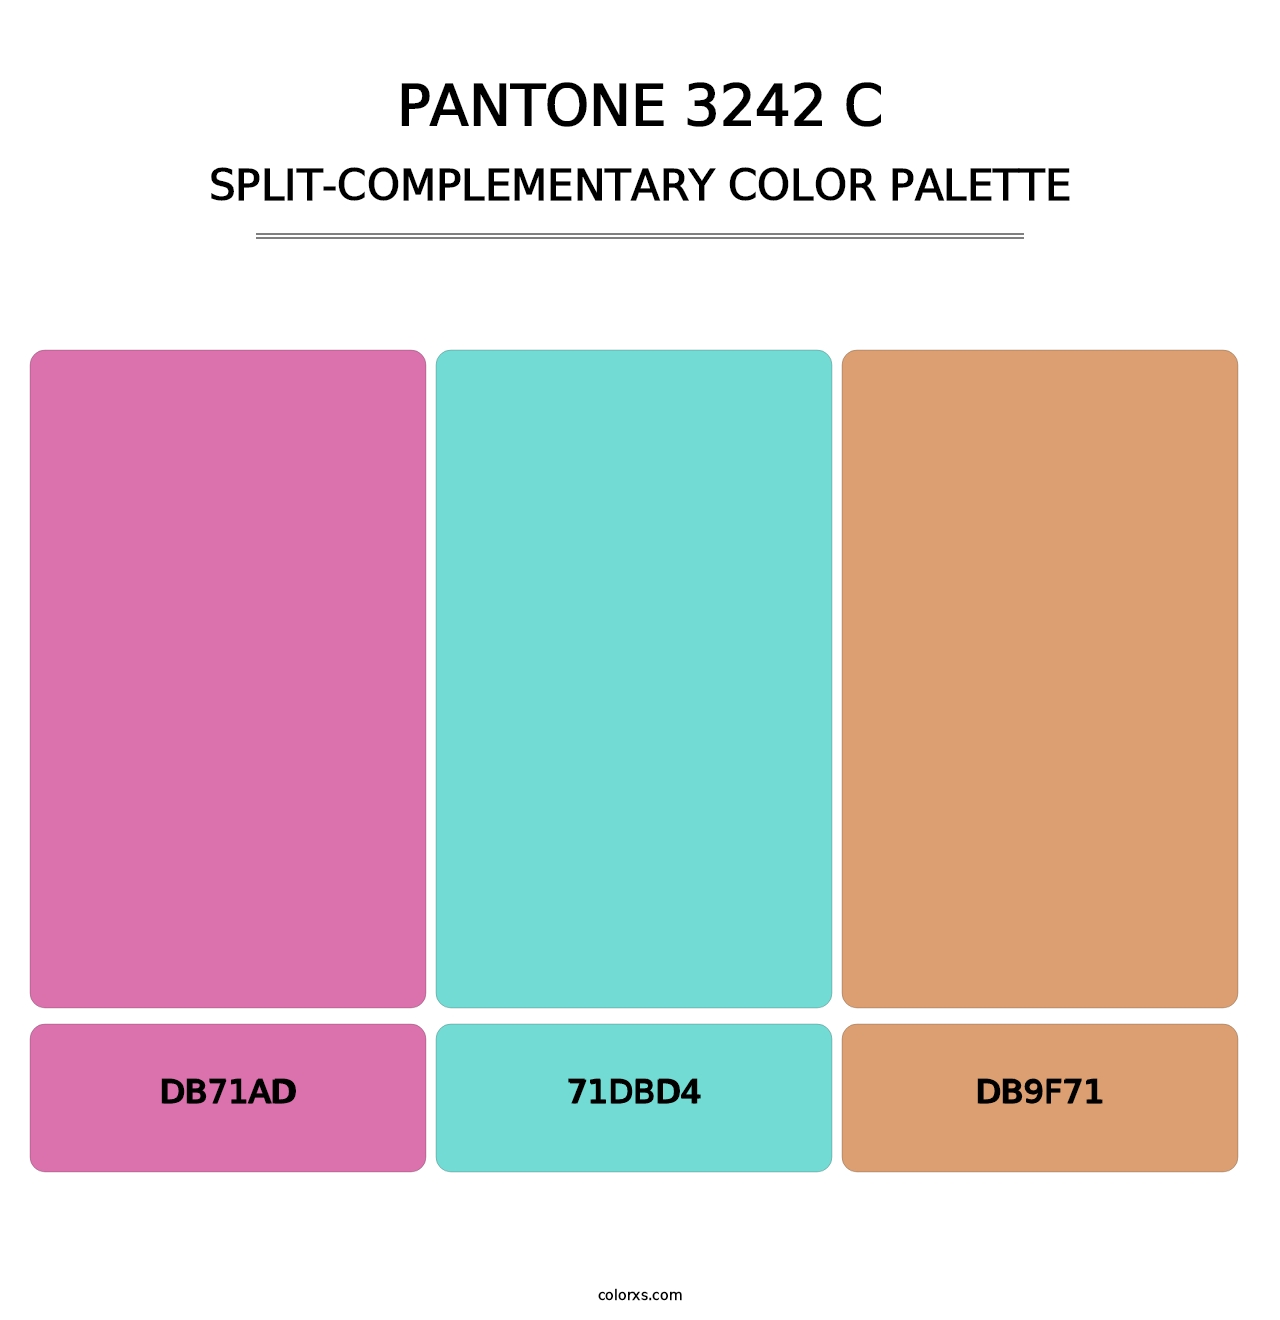 PANTONE 3242 C - Split-Complementary Color Palette